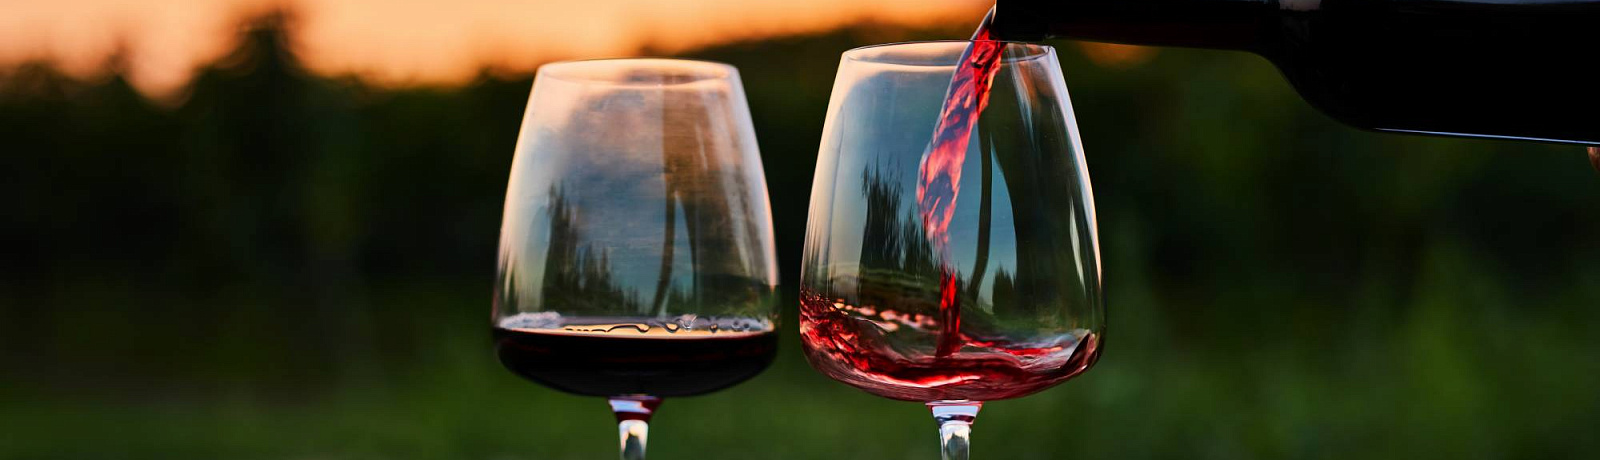 Настоящая находка: до -35% на топовые вина Старого и Нового Света